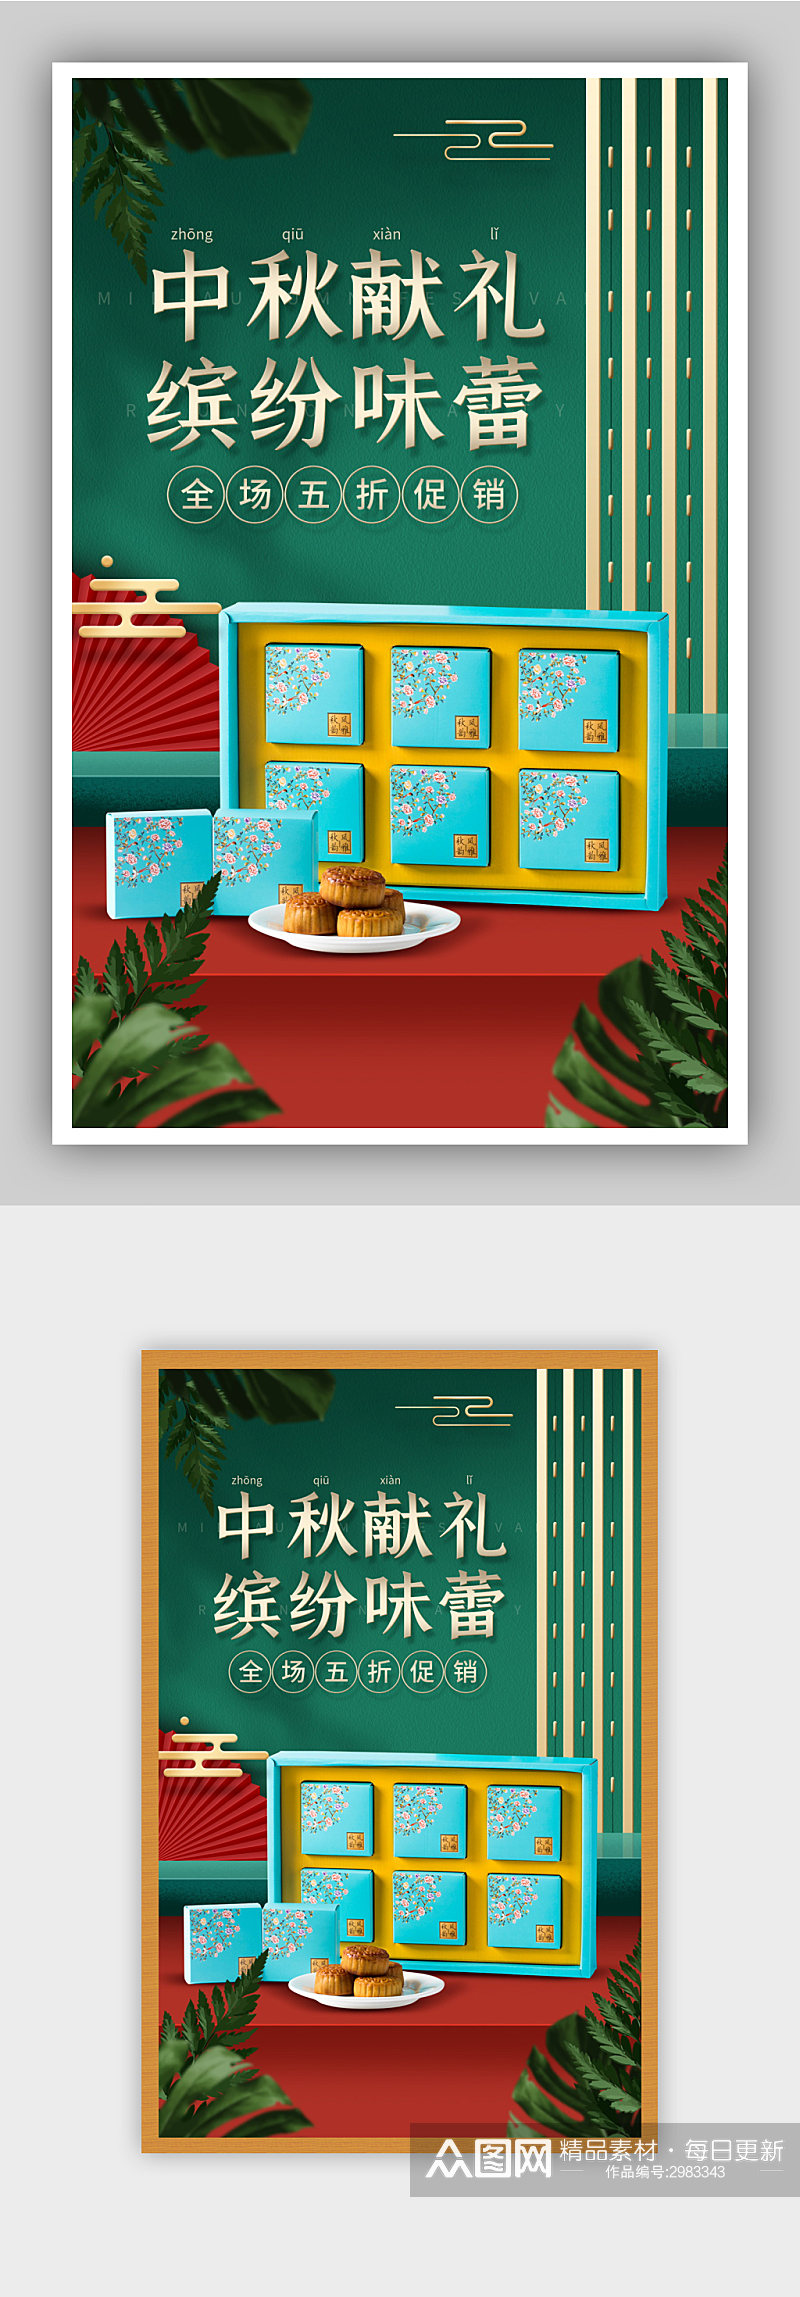 中秋节月饼促销红绿海报素材